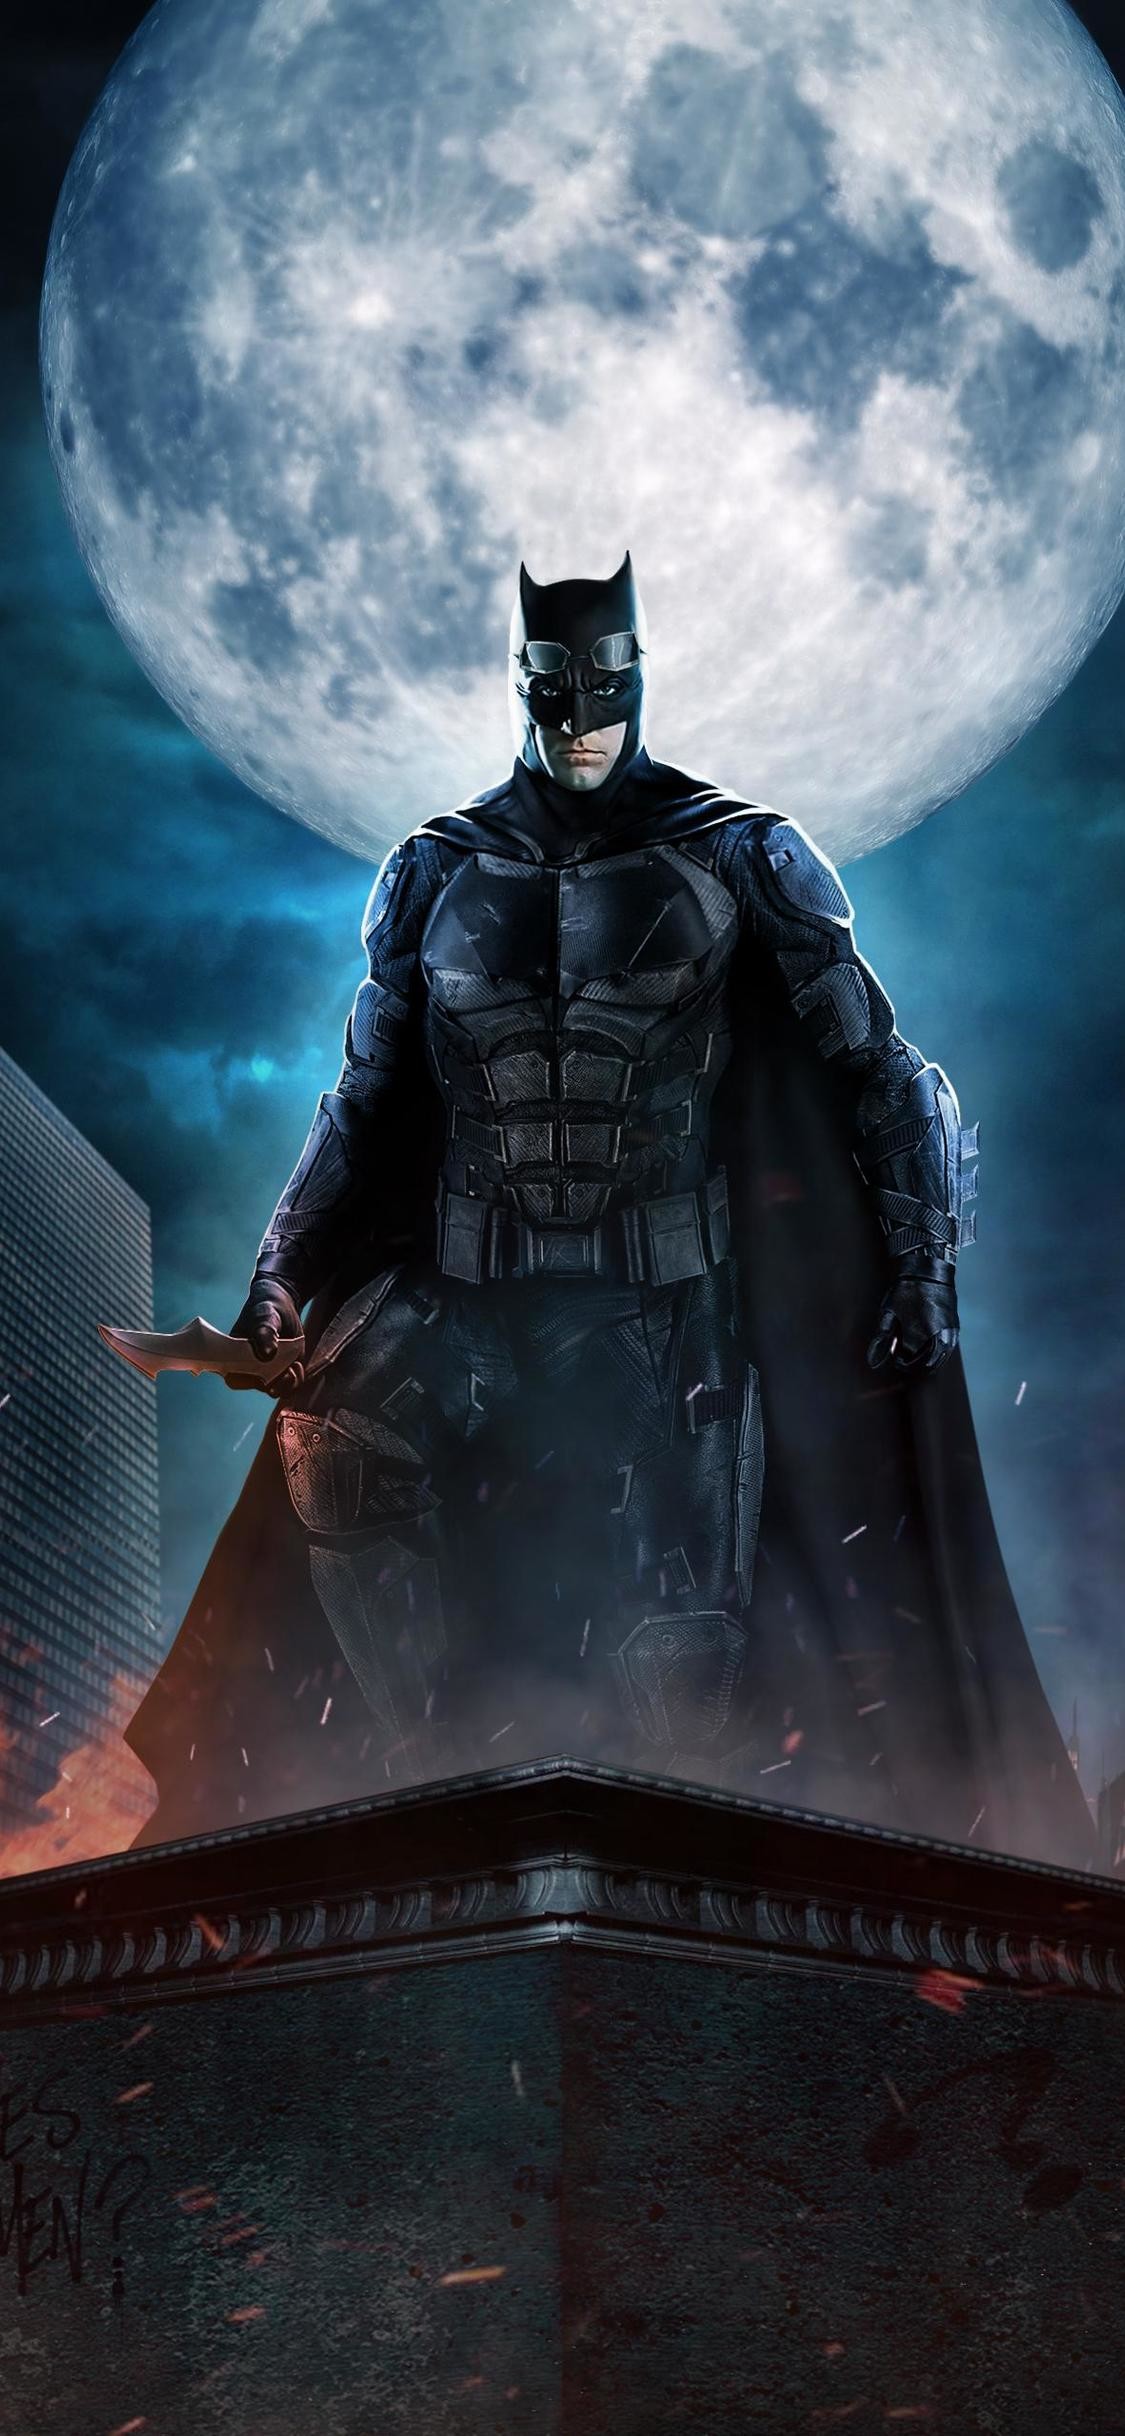 sfondo di justice league,batman,personaggio fittizio,supereroe,lega della giustizia,cg artwork